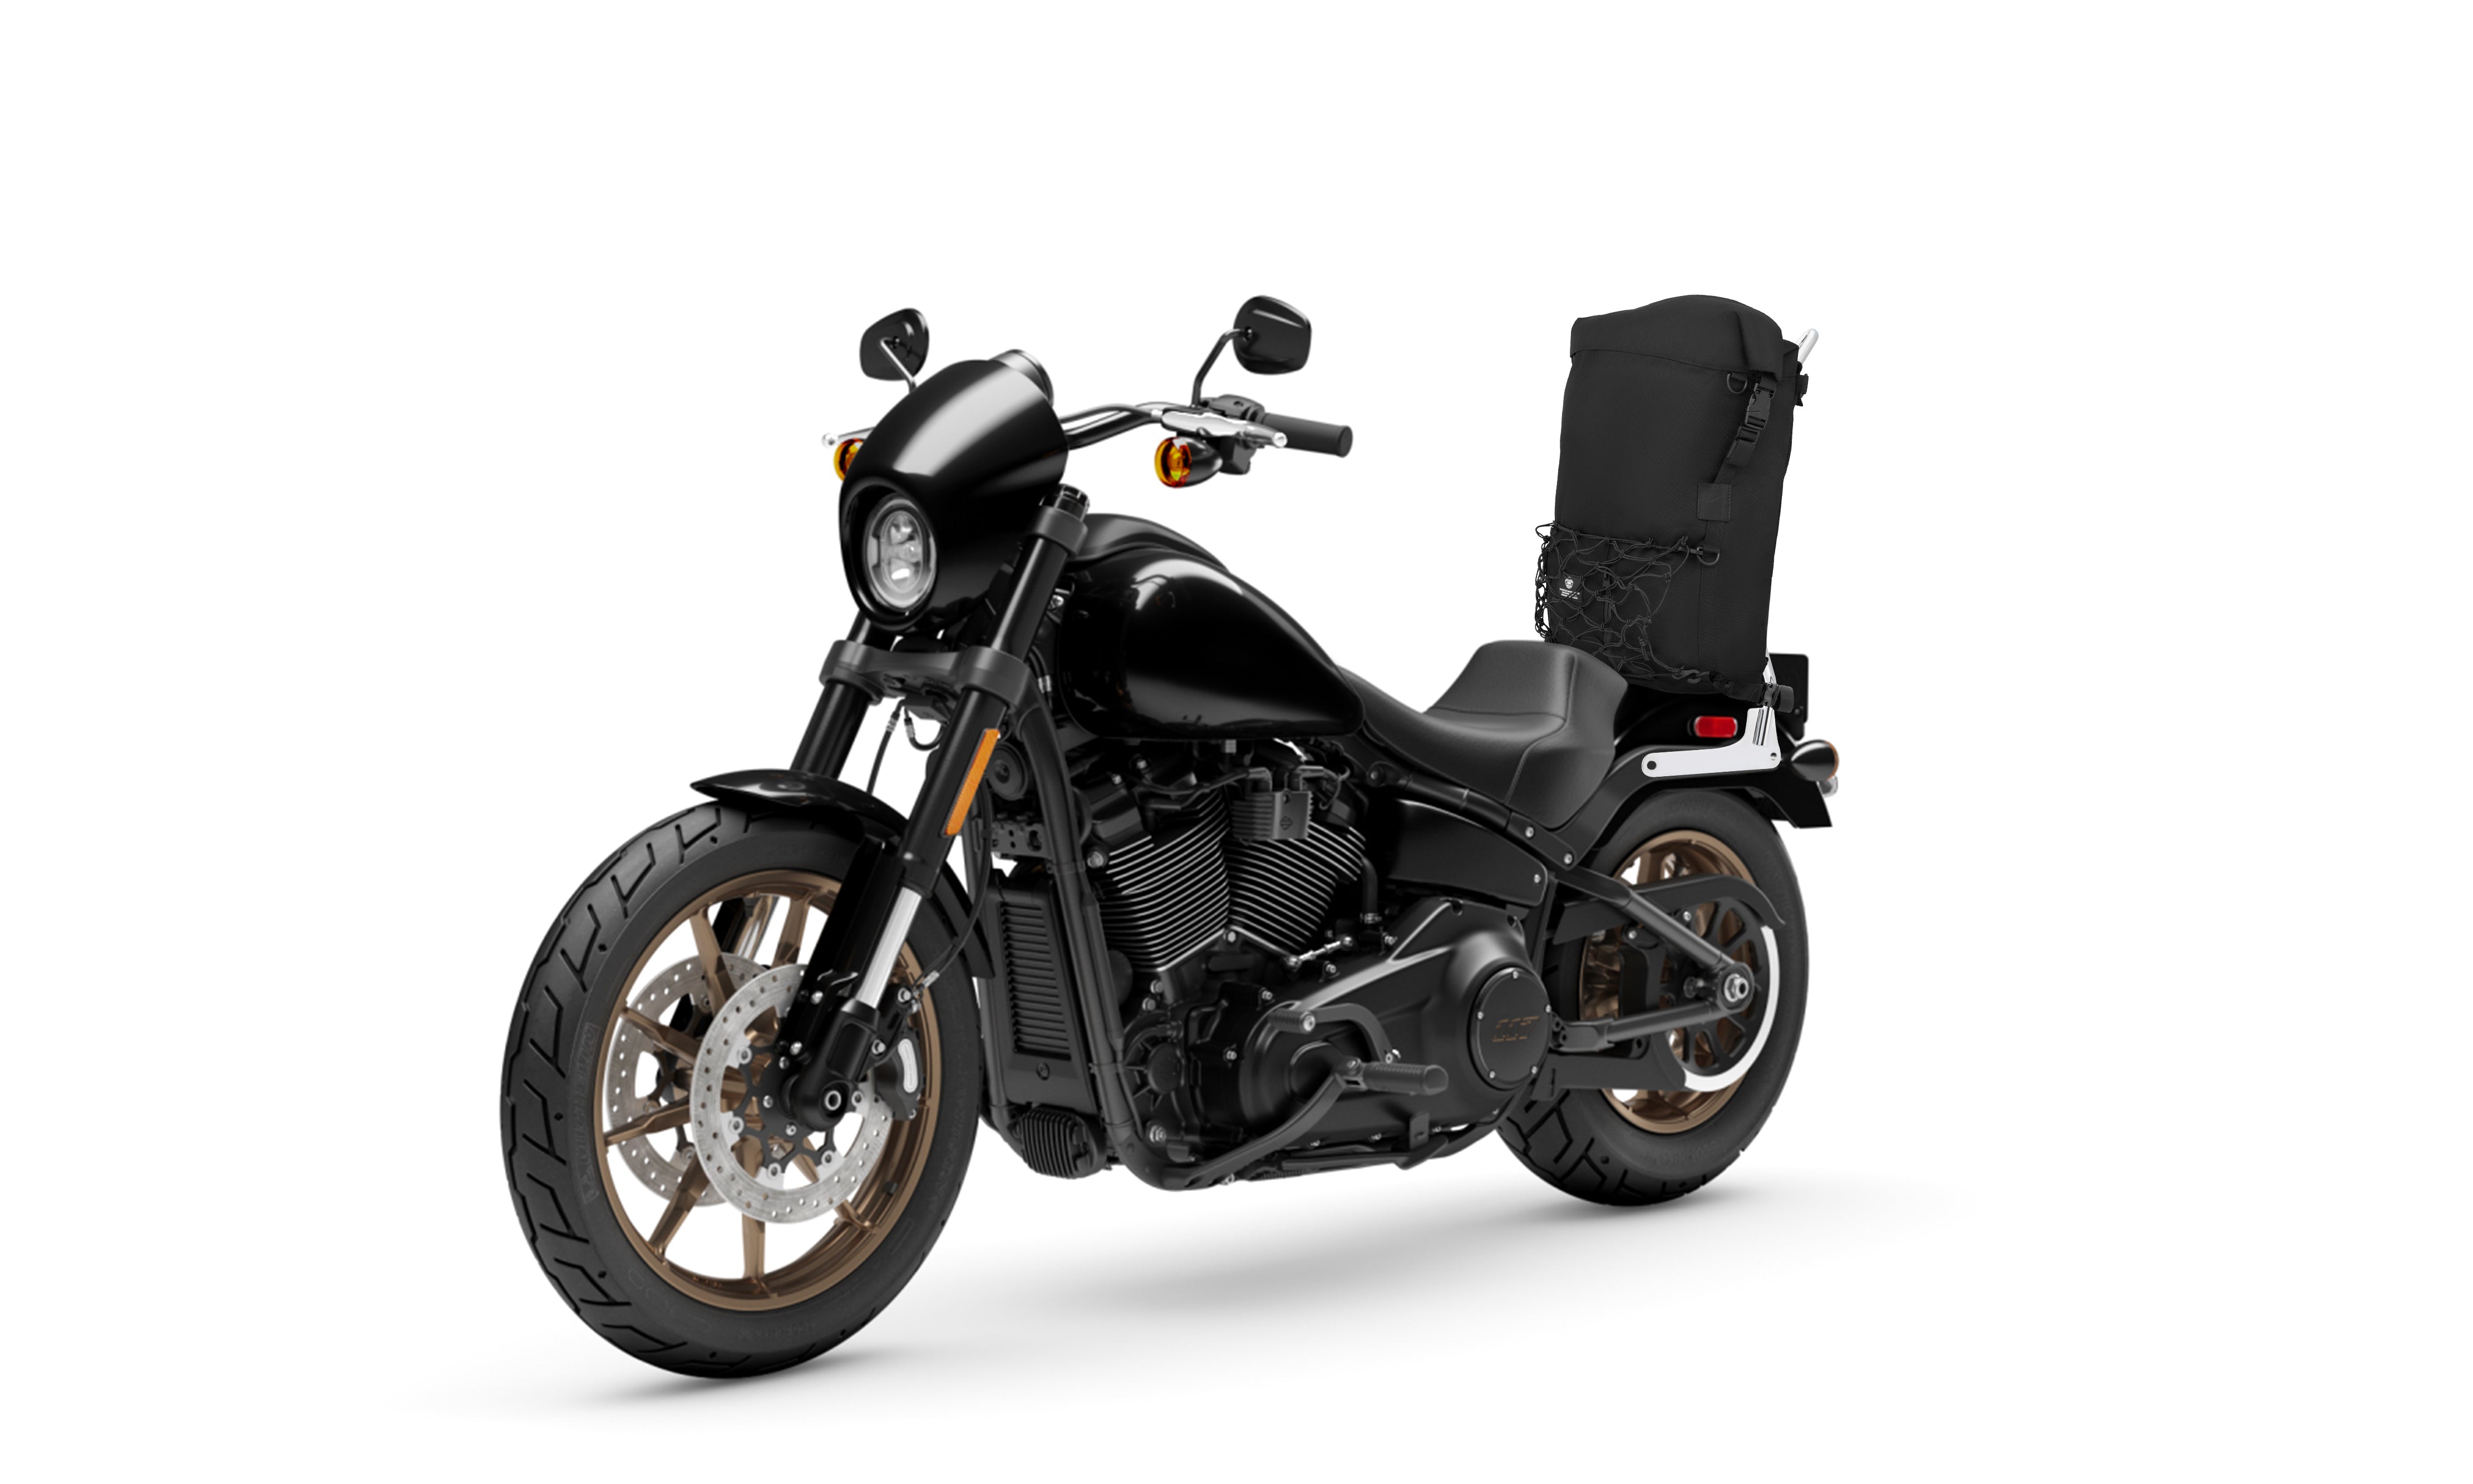 Viking Vanguard Large Motorcycle Sissy Bar Bag on Bike View @expand